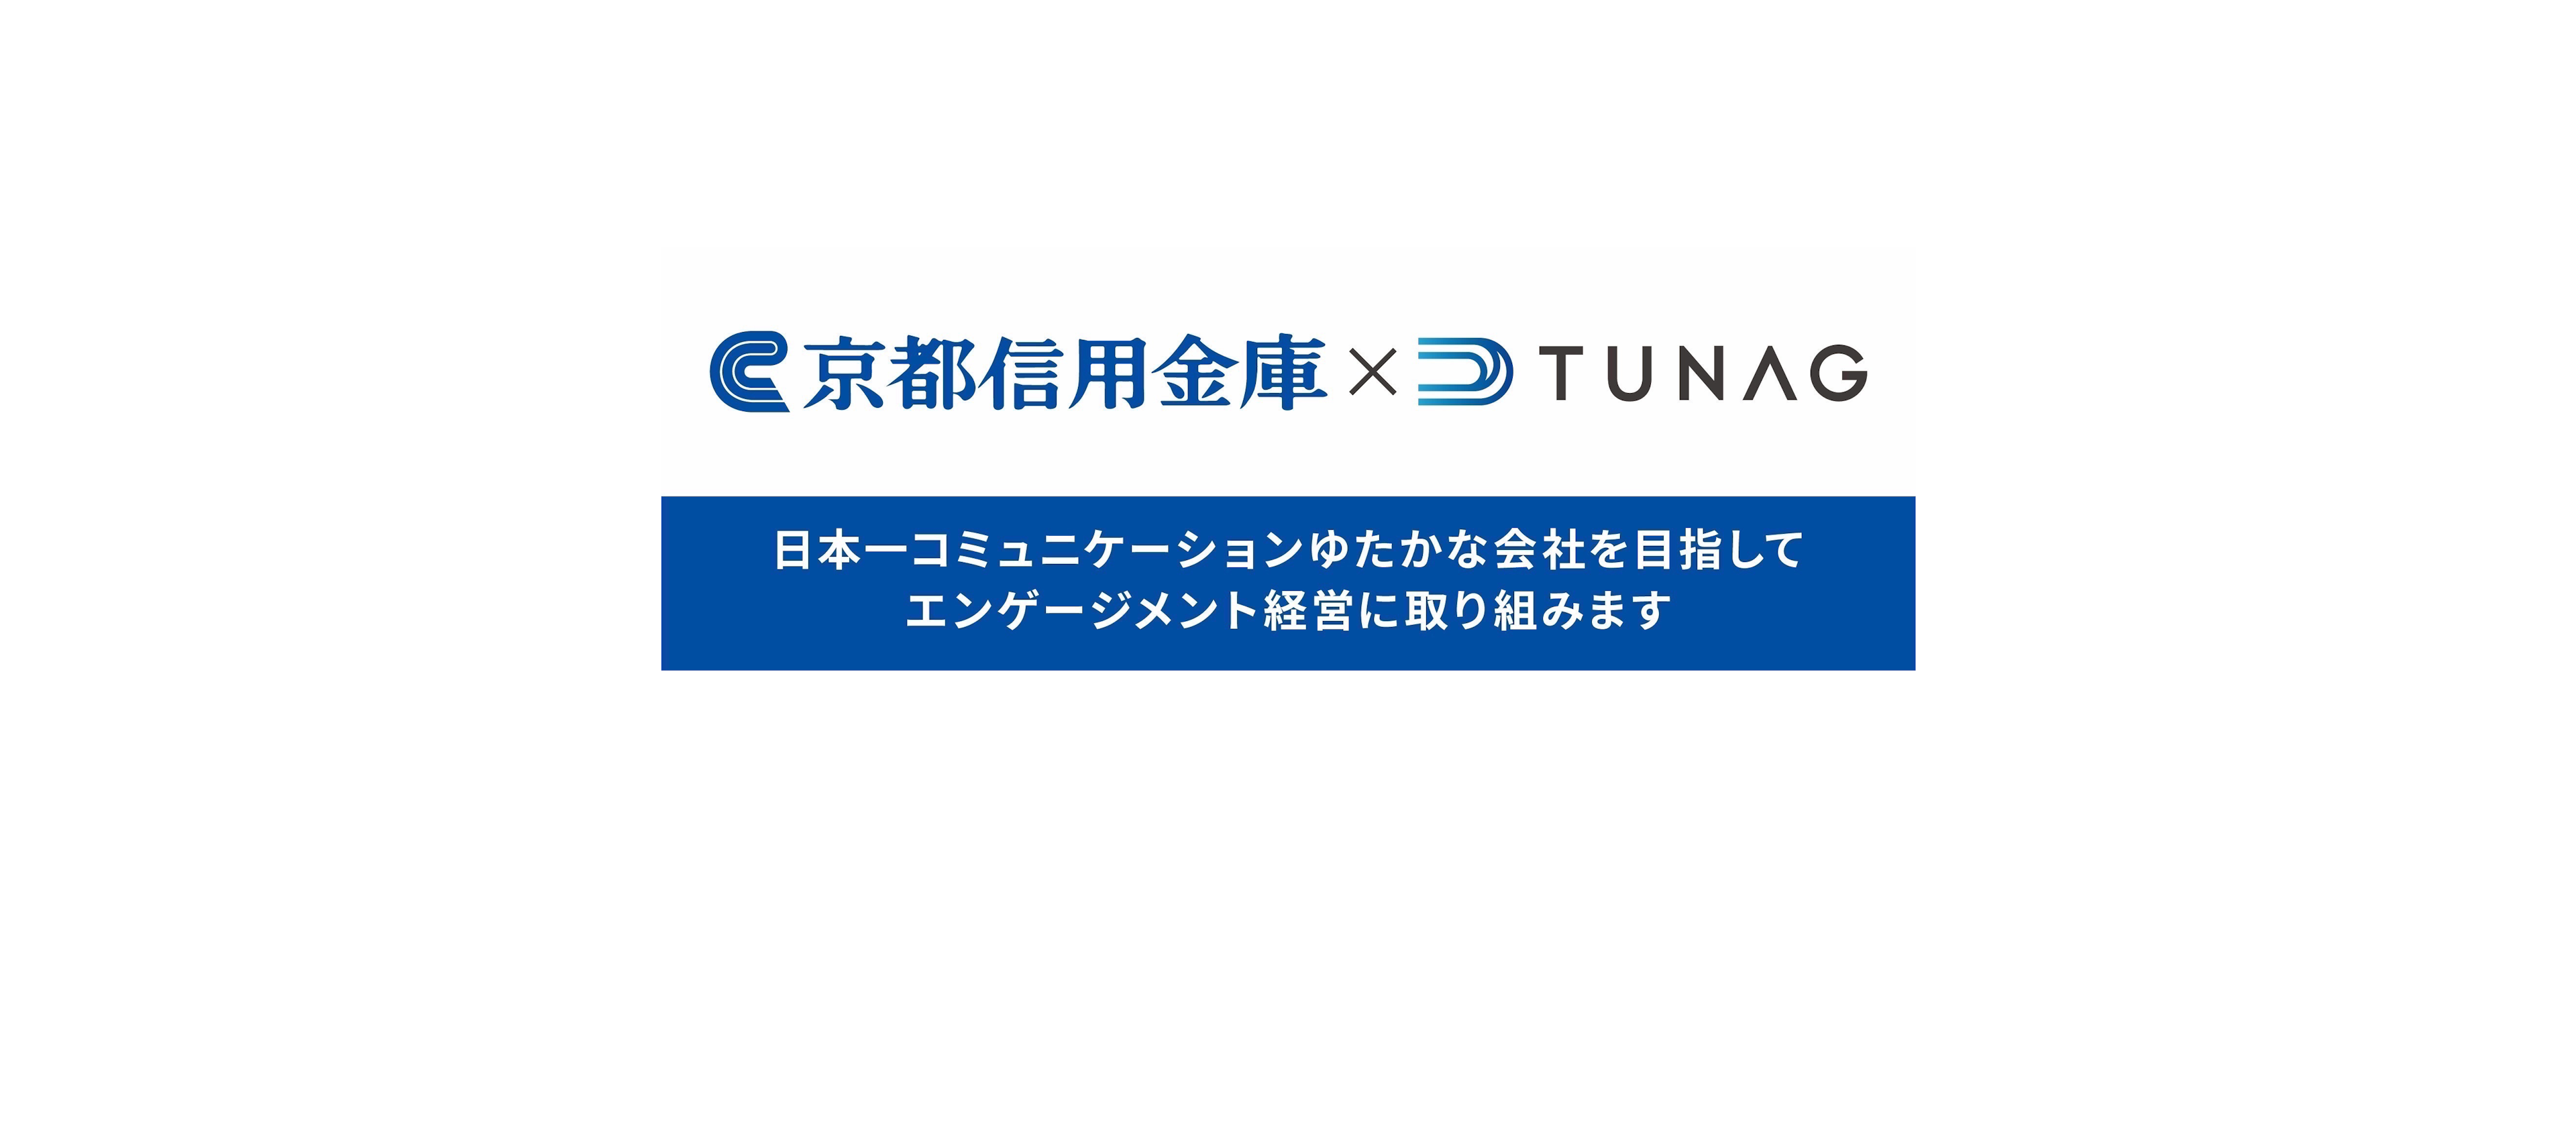 「日本一コミュニケーションがゆたかになる会社を目指す」京都信用金庫様がTUNAGを導入